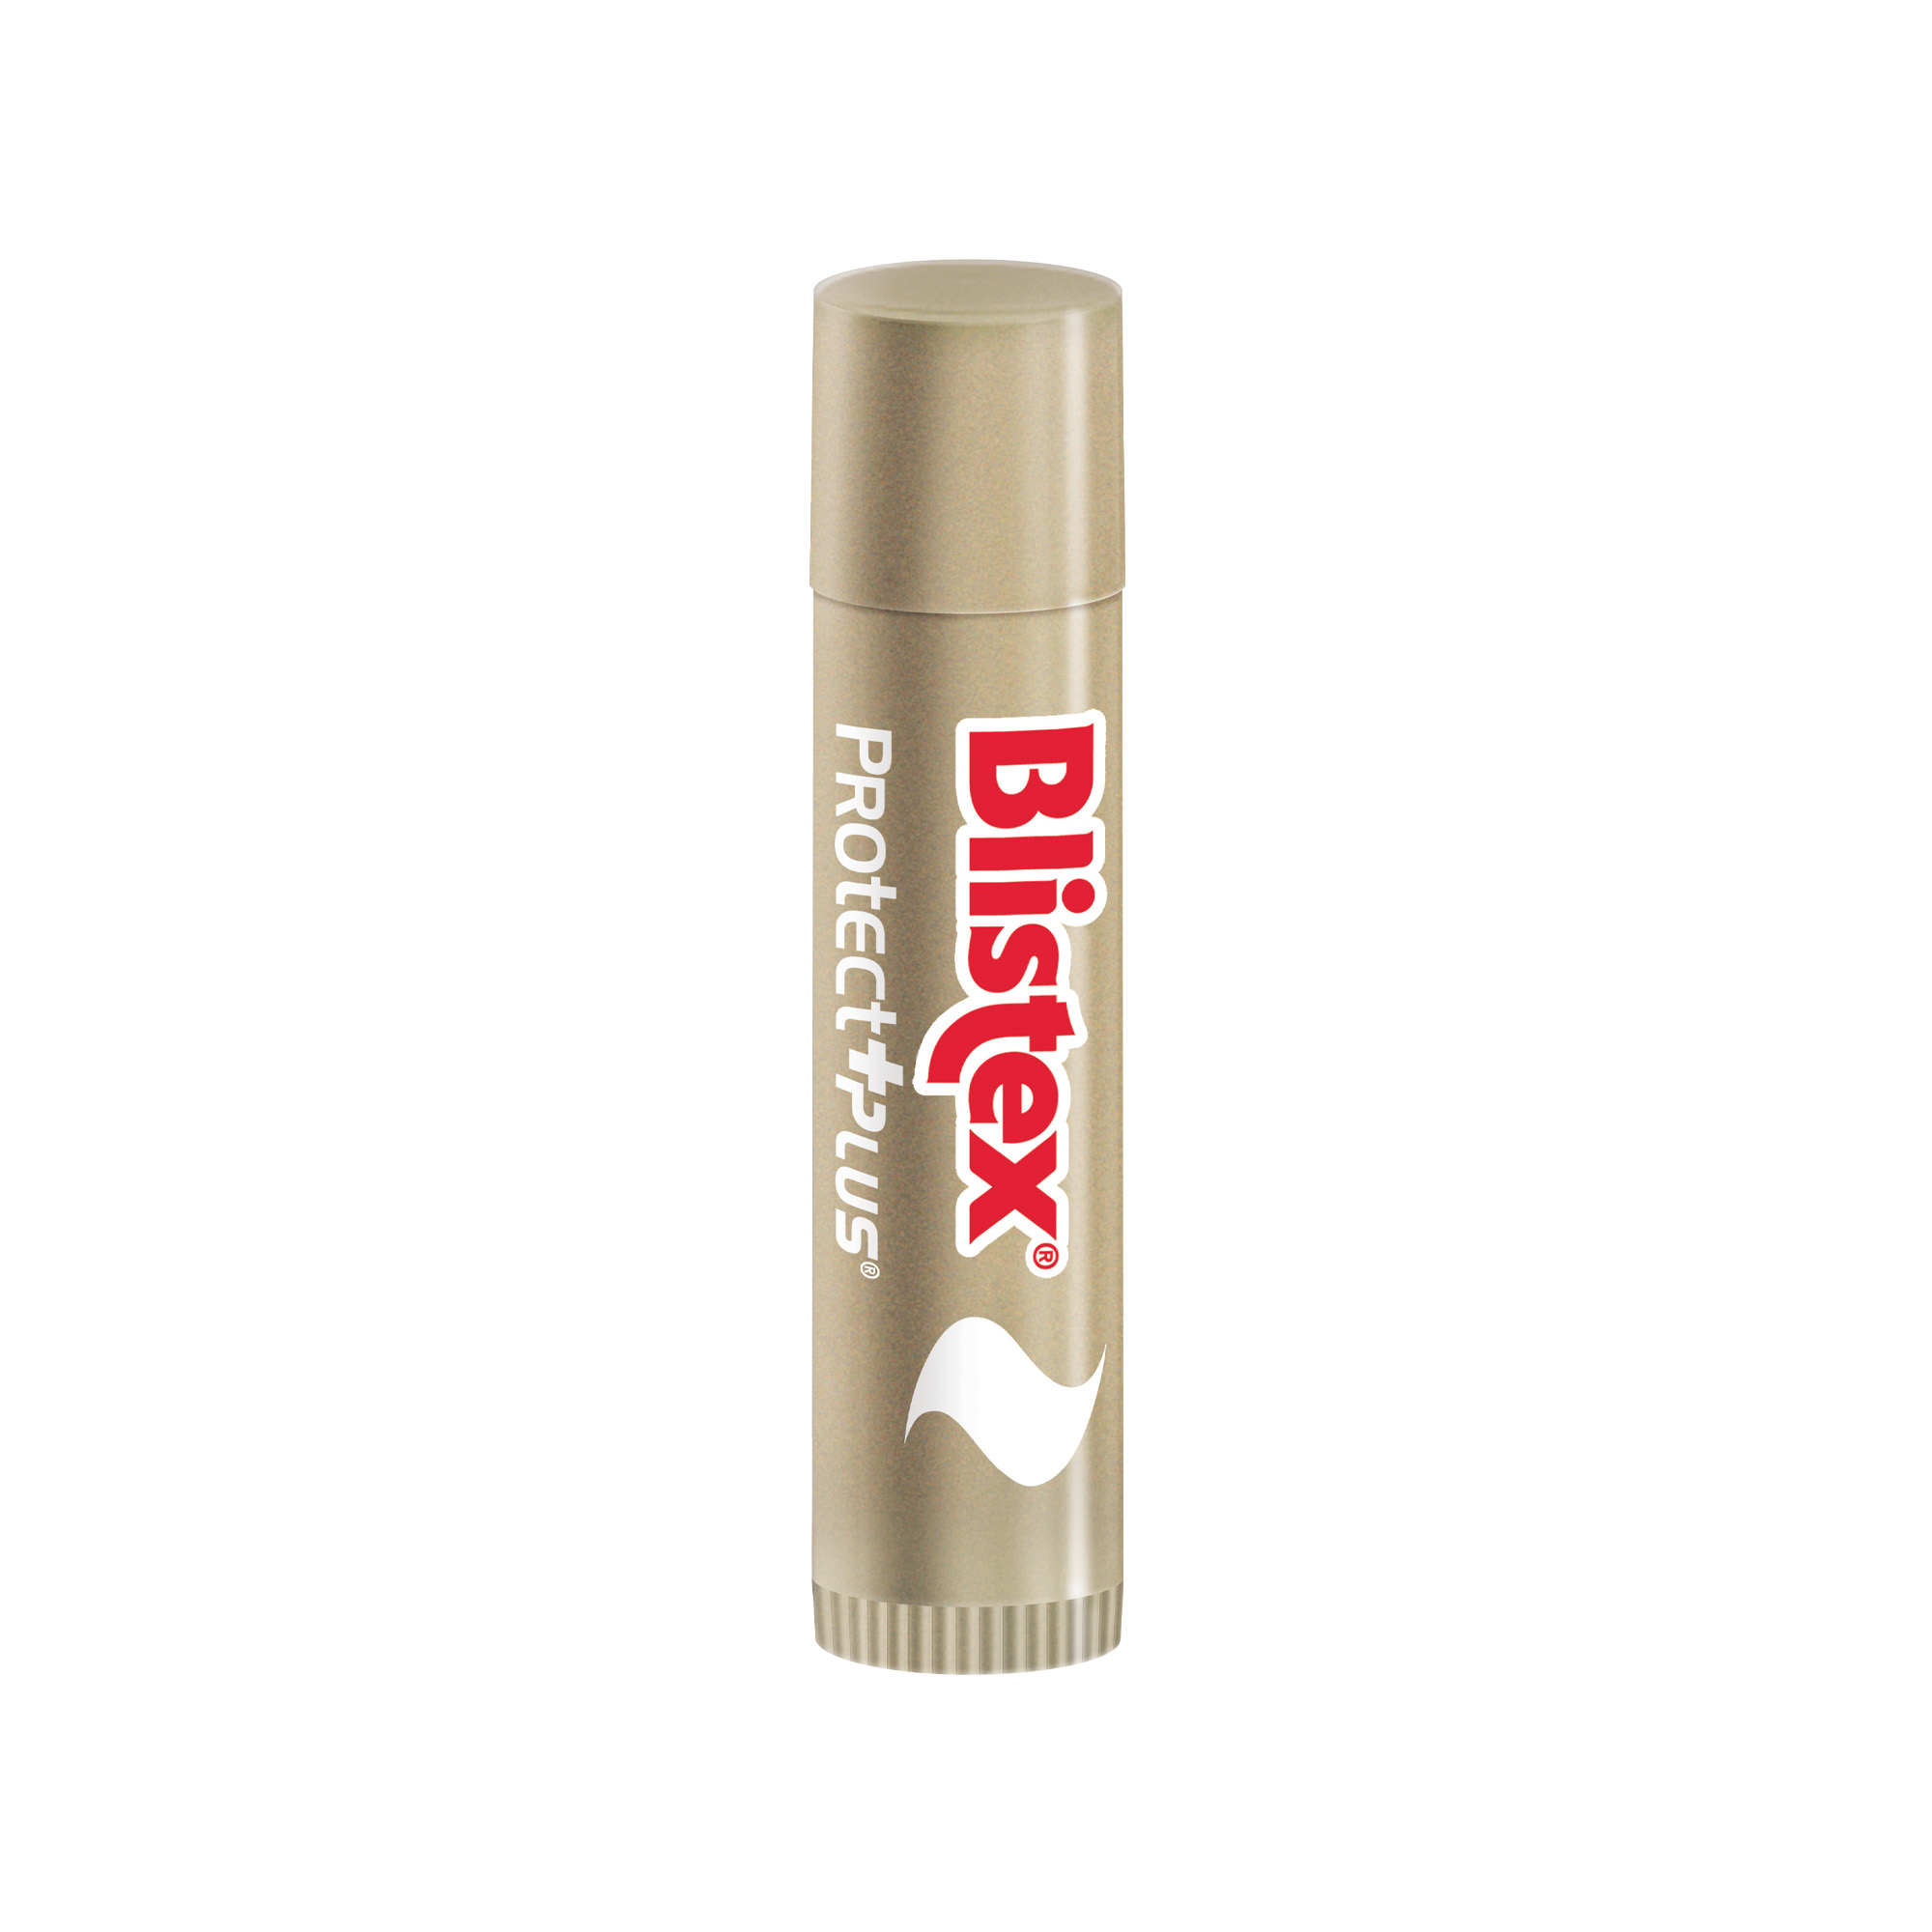 Blistex stick per labbra Protect Plus Ultra protettivo SPF30